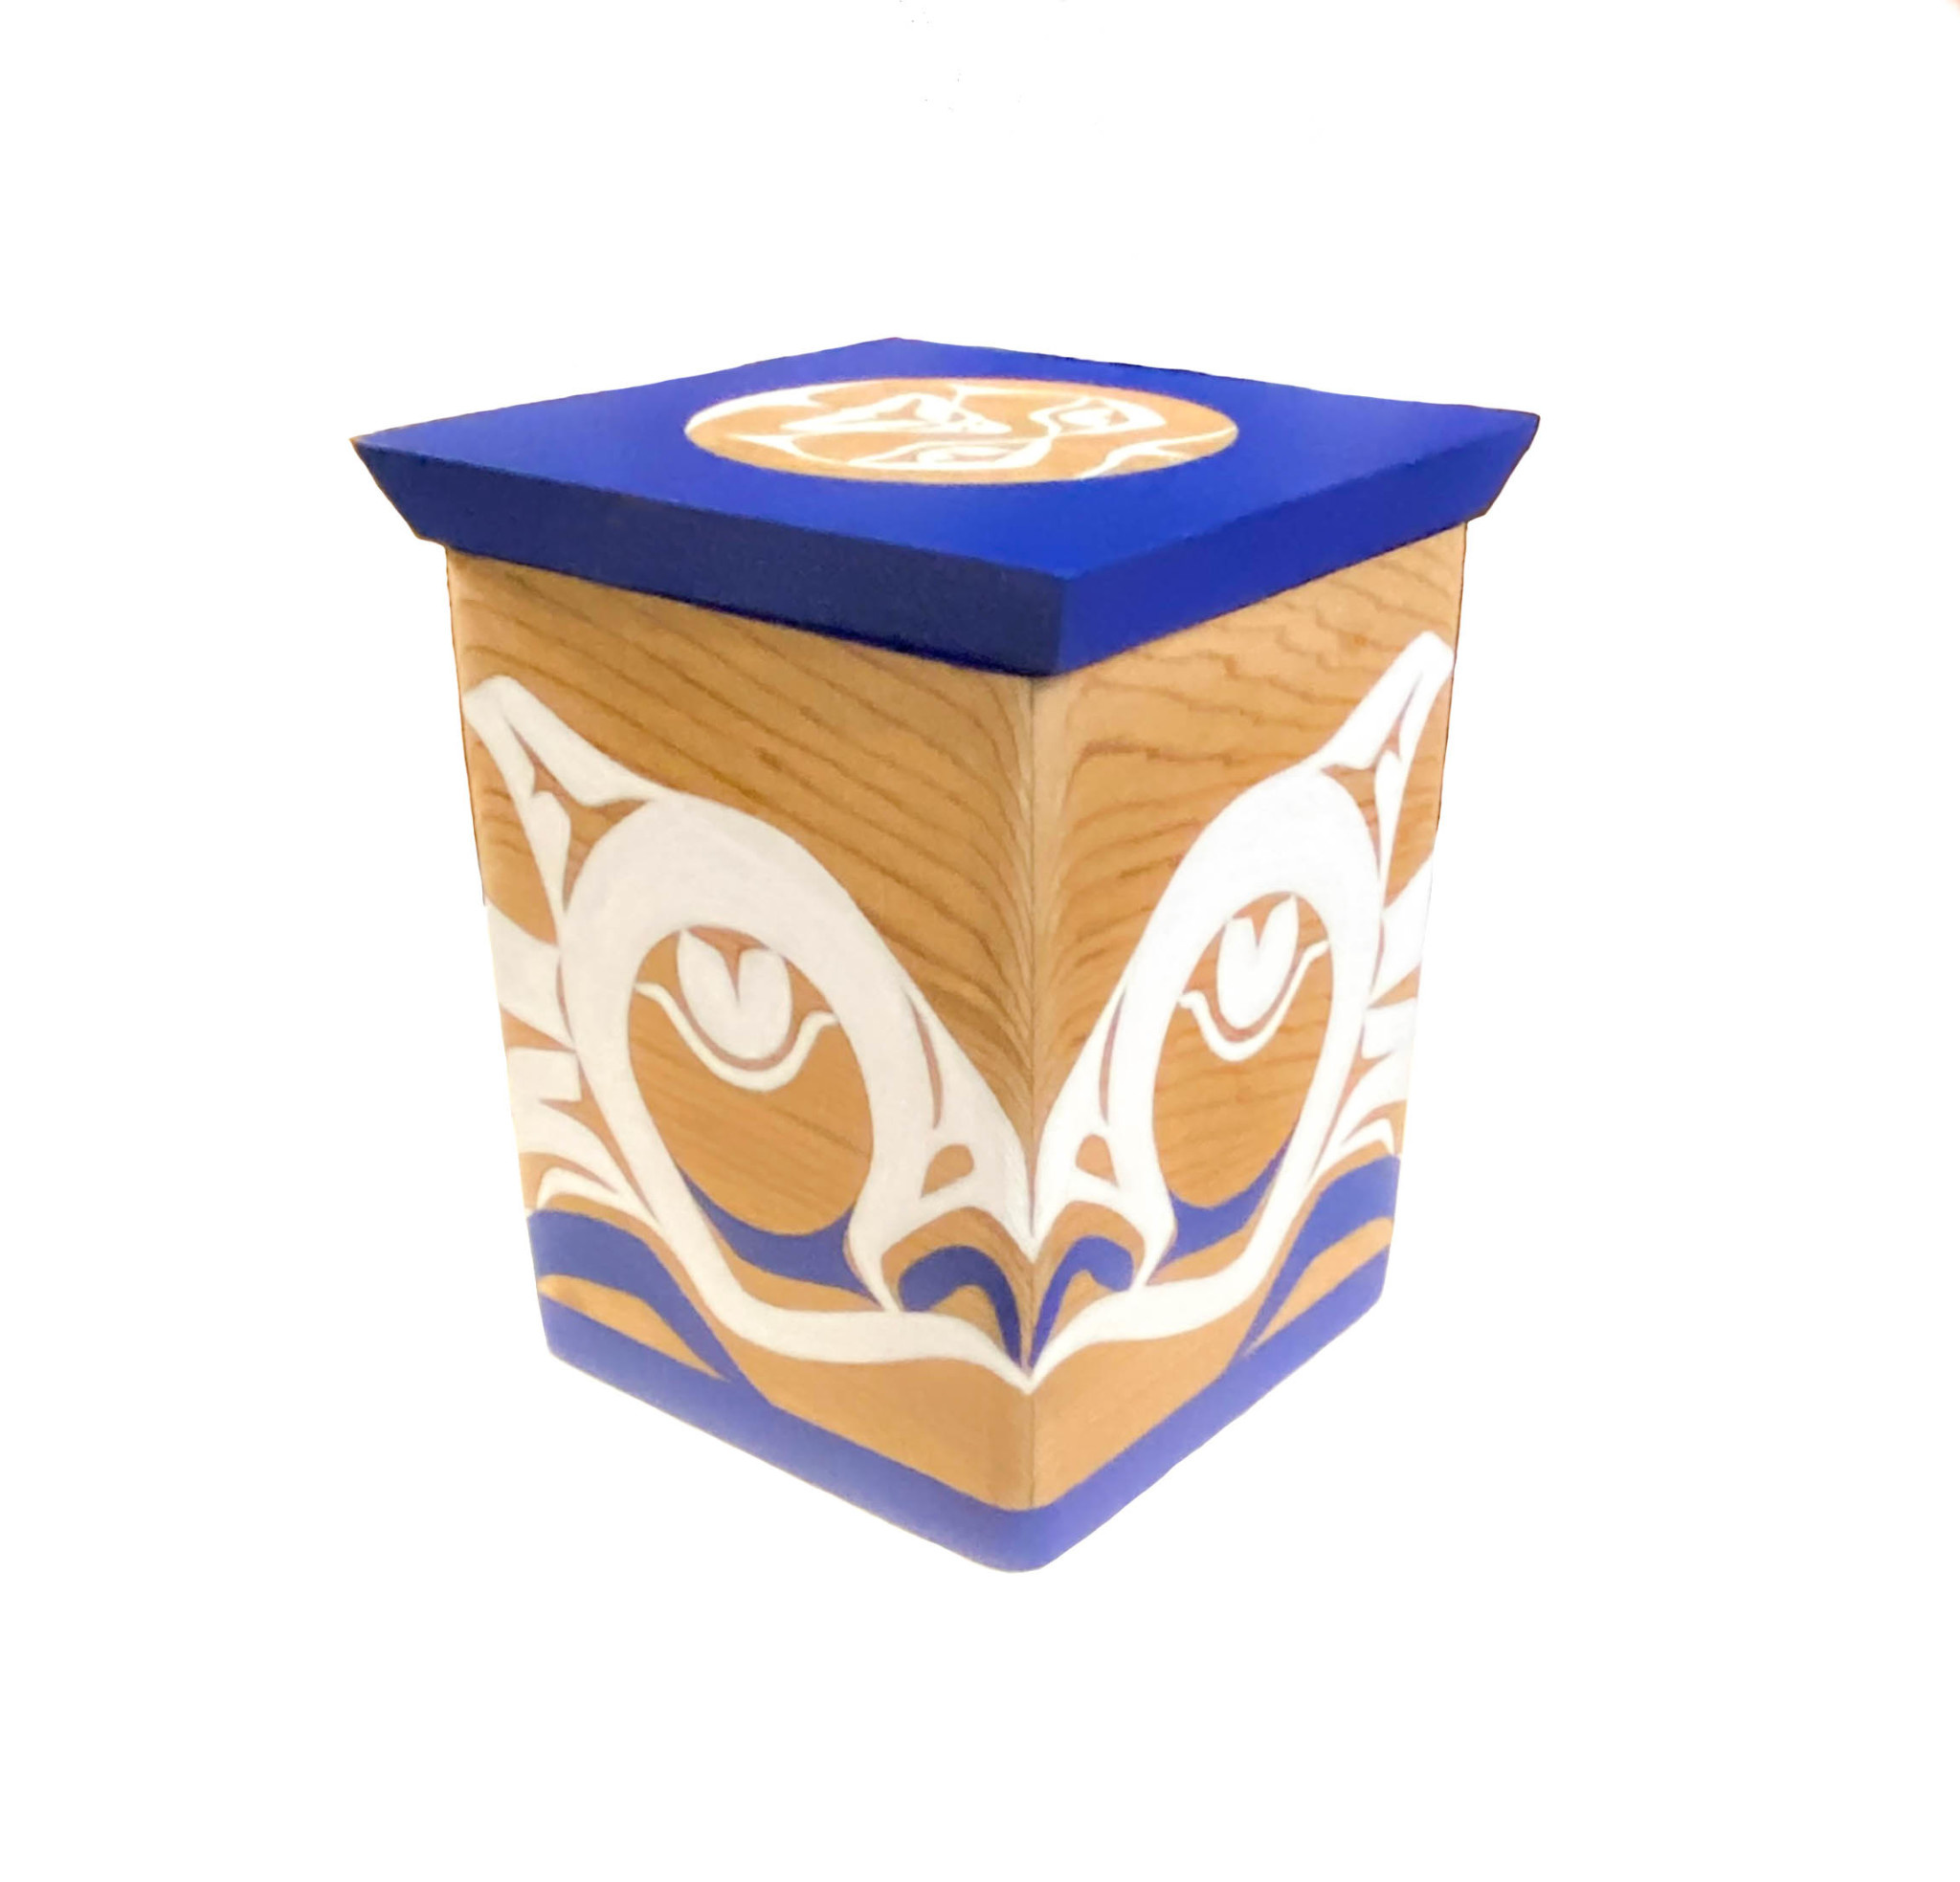 Cedar Box with  Owl and Moon